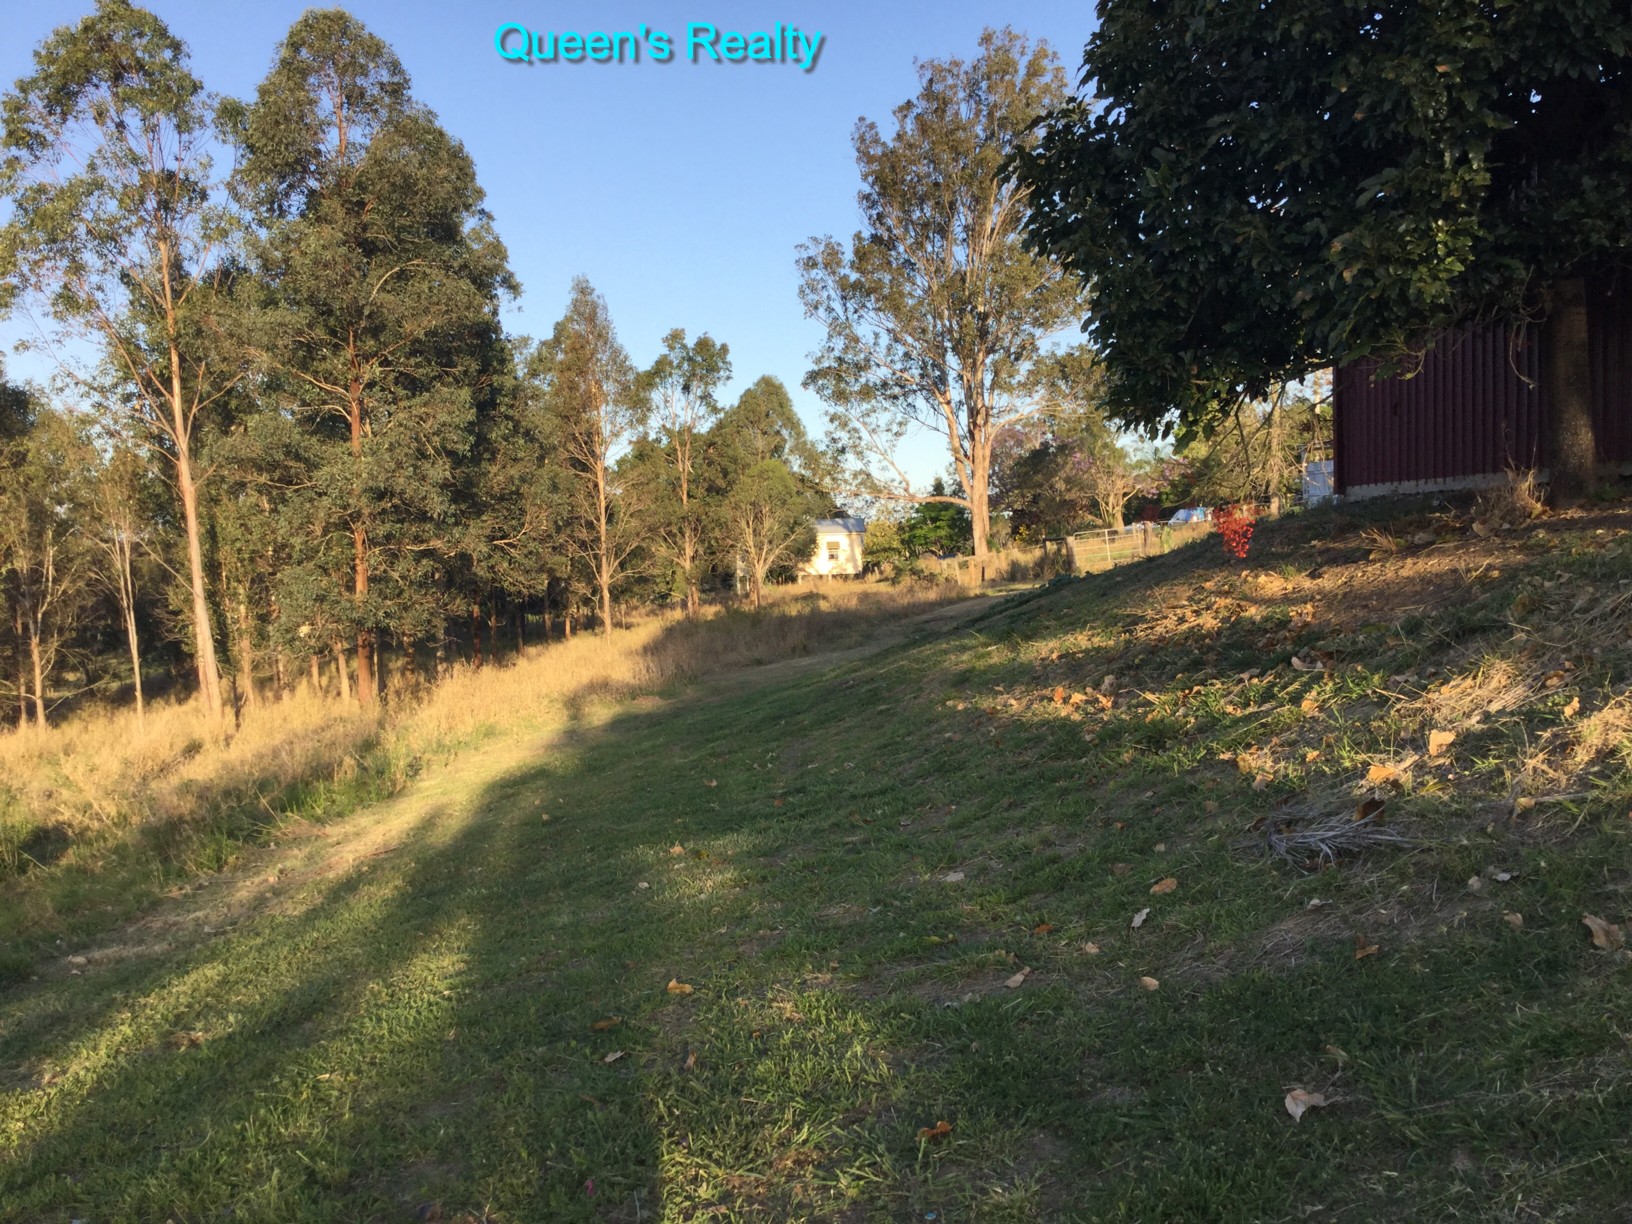 https://queensrealty.wordpress.com/wp-content/uploads/2015/11/29-marburg-10-acres-backyard-and-slope.jpg